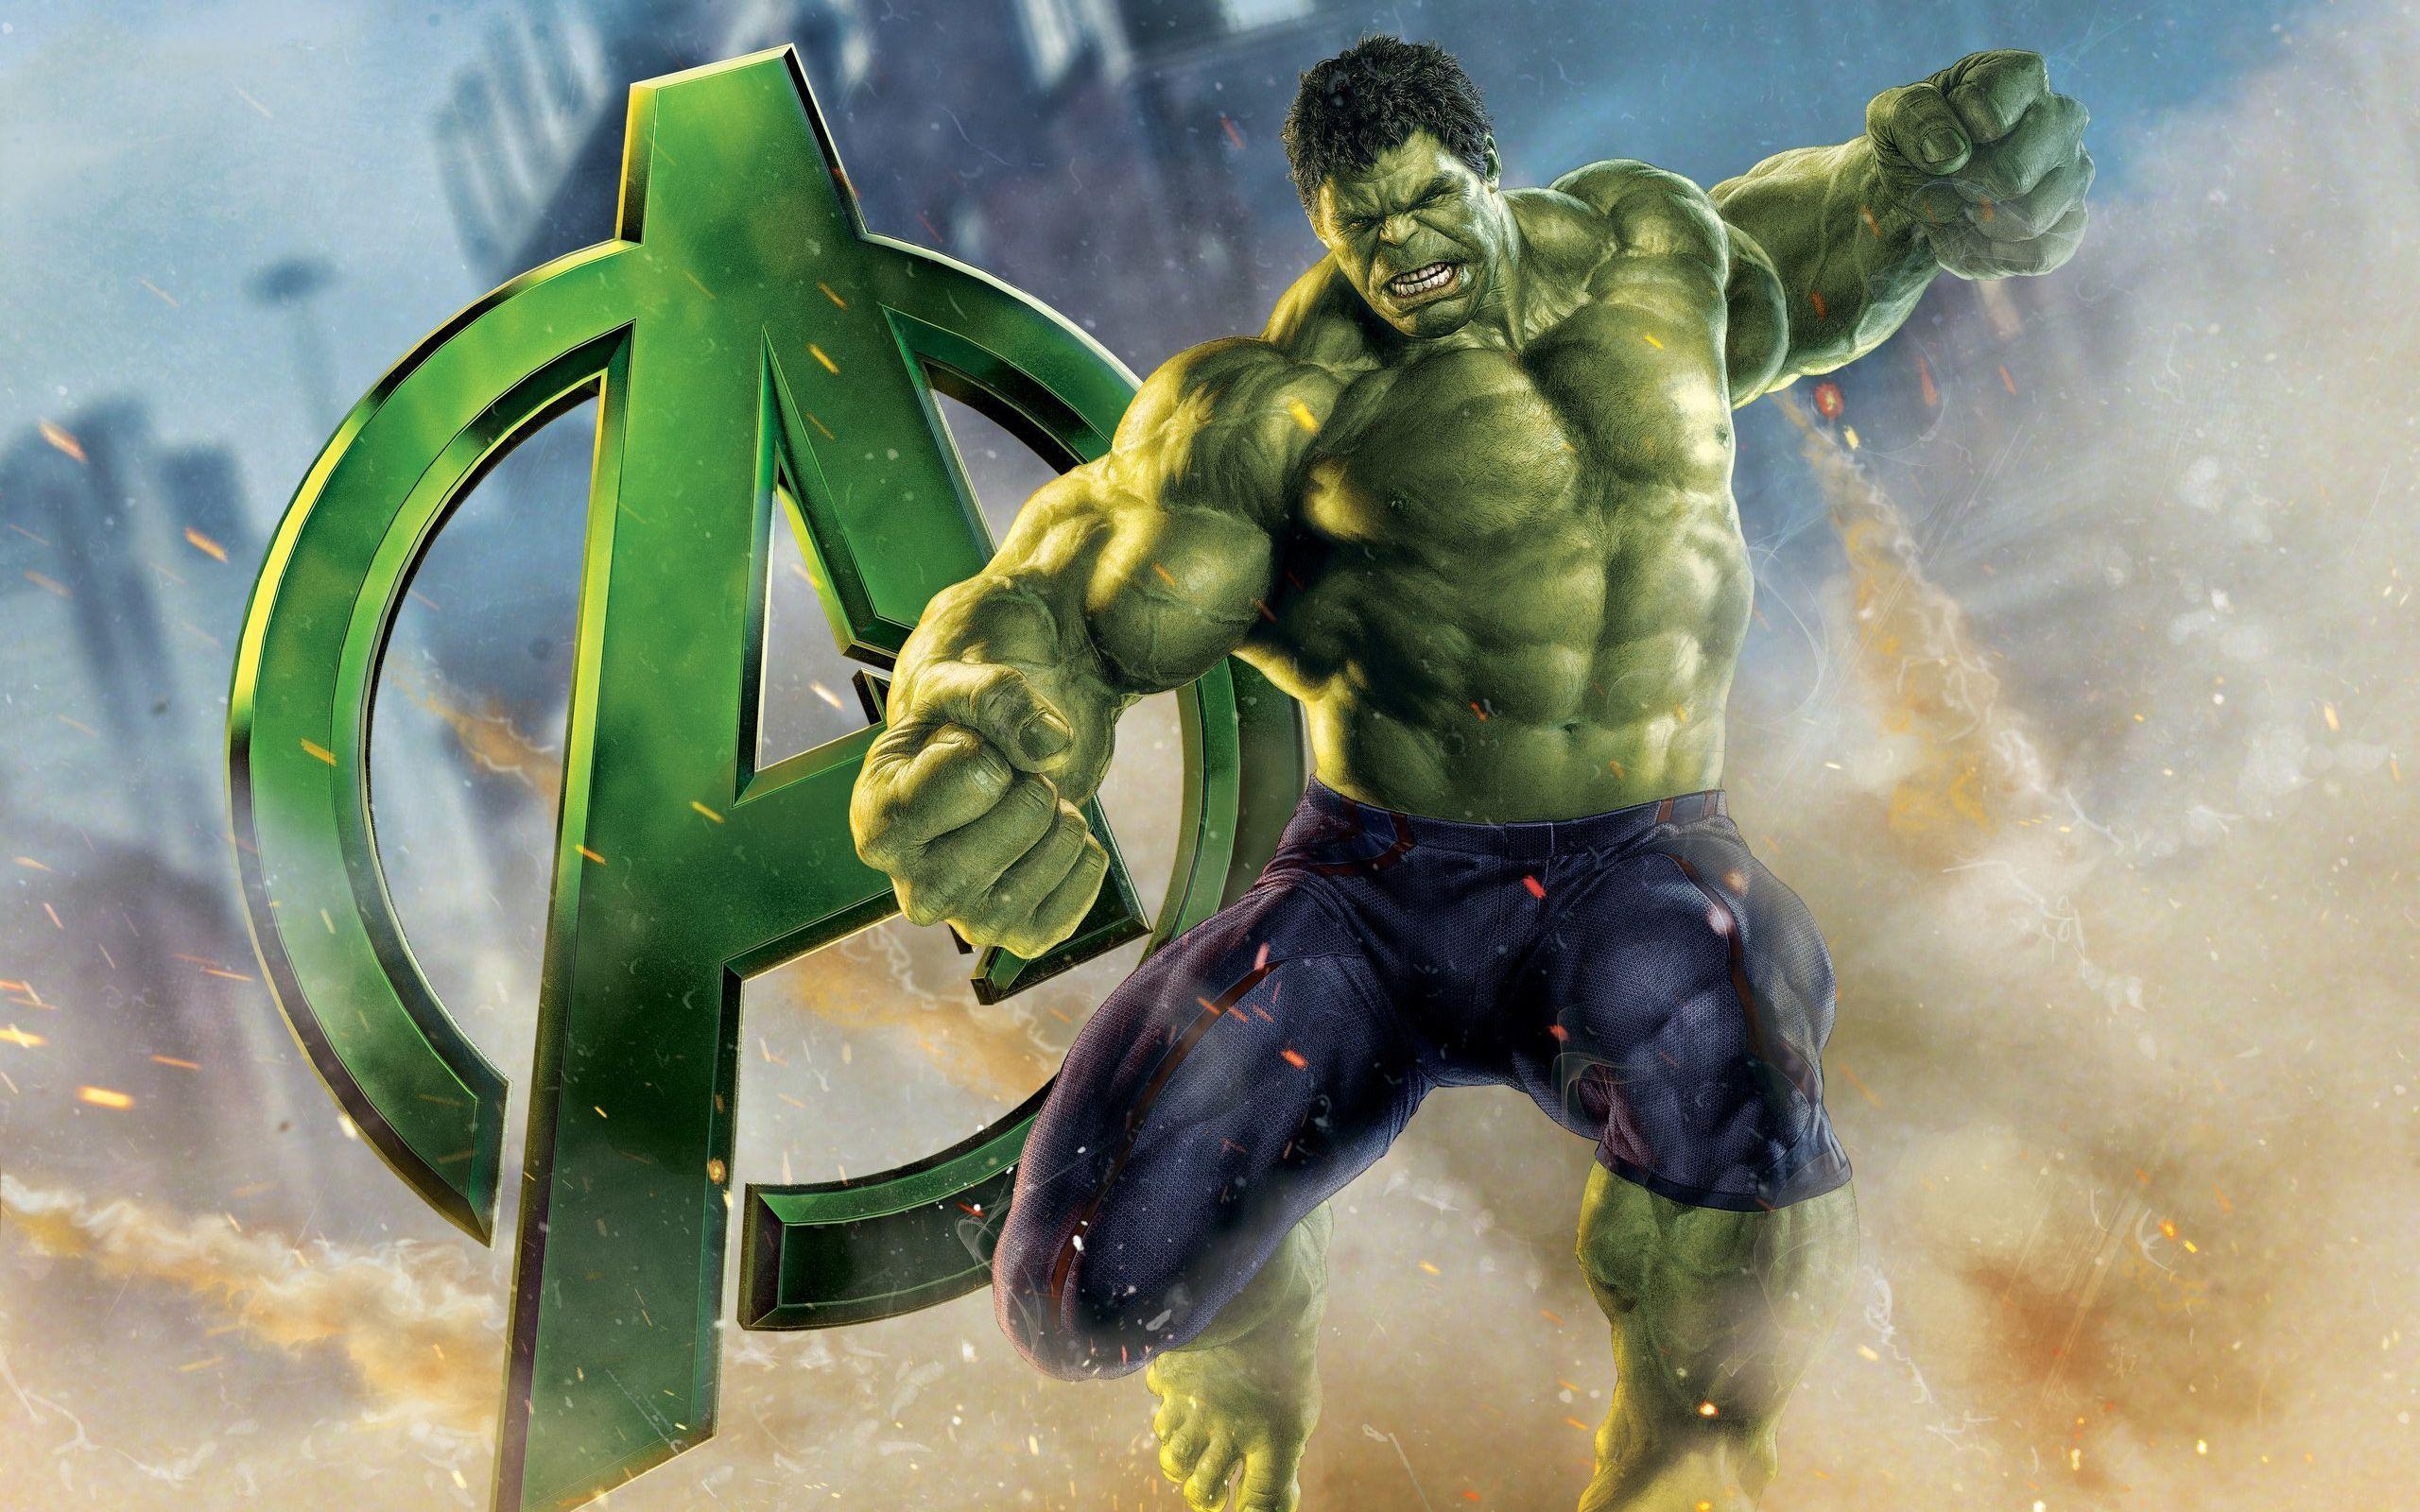 Hulk Vs Hulkbuster Wallpaper